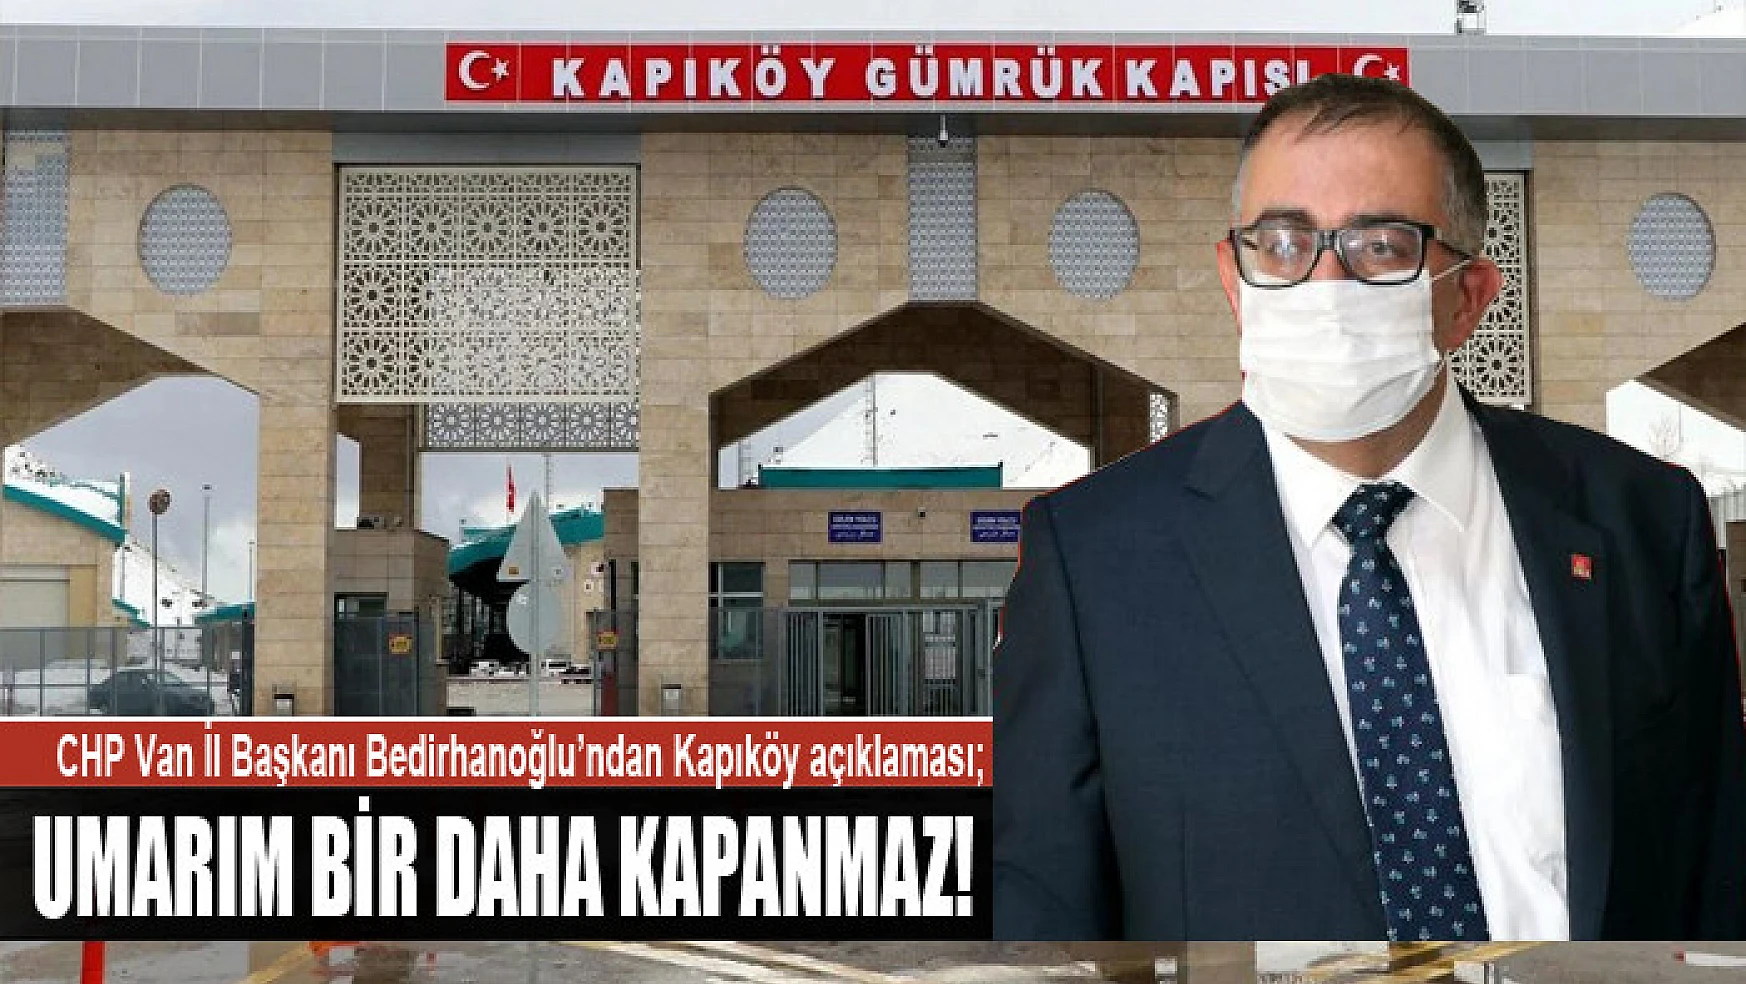 CHP Van İl Başkanı Bedirhanoğlu'ndan Kapıköy açıklaması Umarım bir daha kapanmaz!